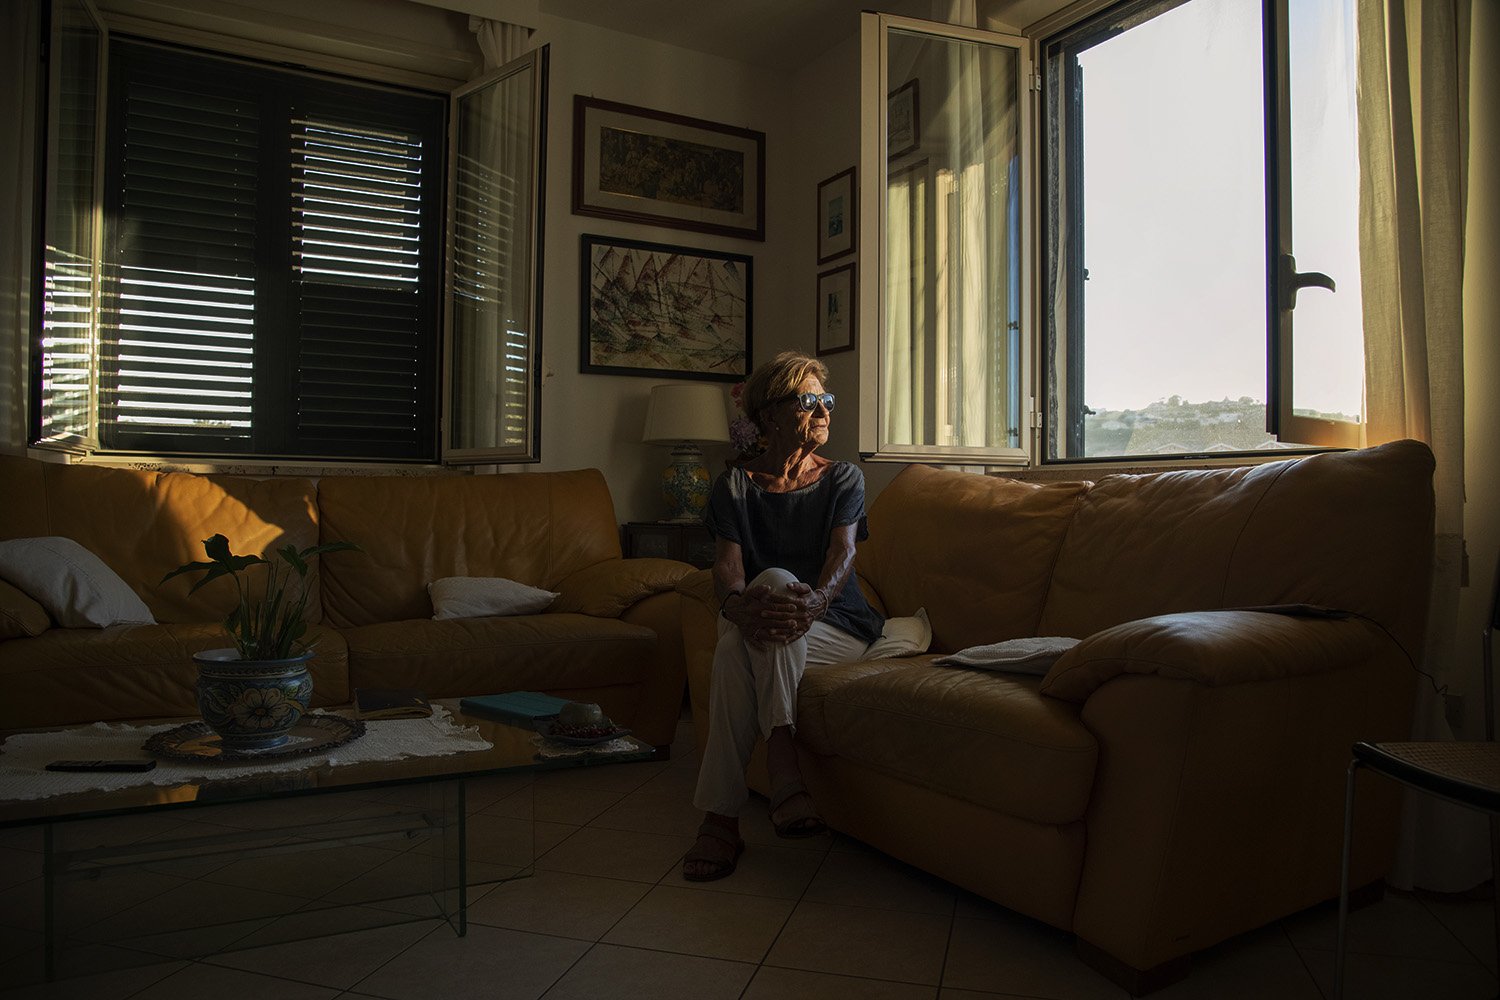  Mariolina De Francesco, abitante del Residence Due Torri, a rischio esproprio. Nella zona di Torre Faro, Messina 2023. 